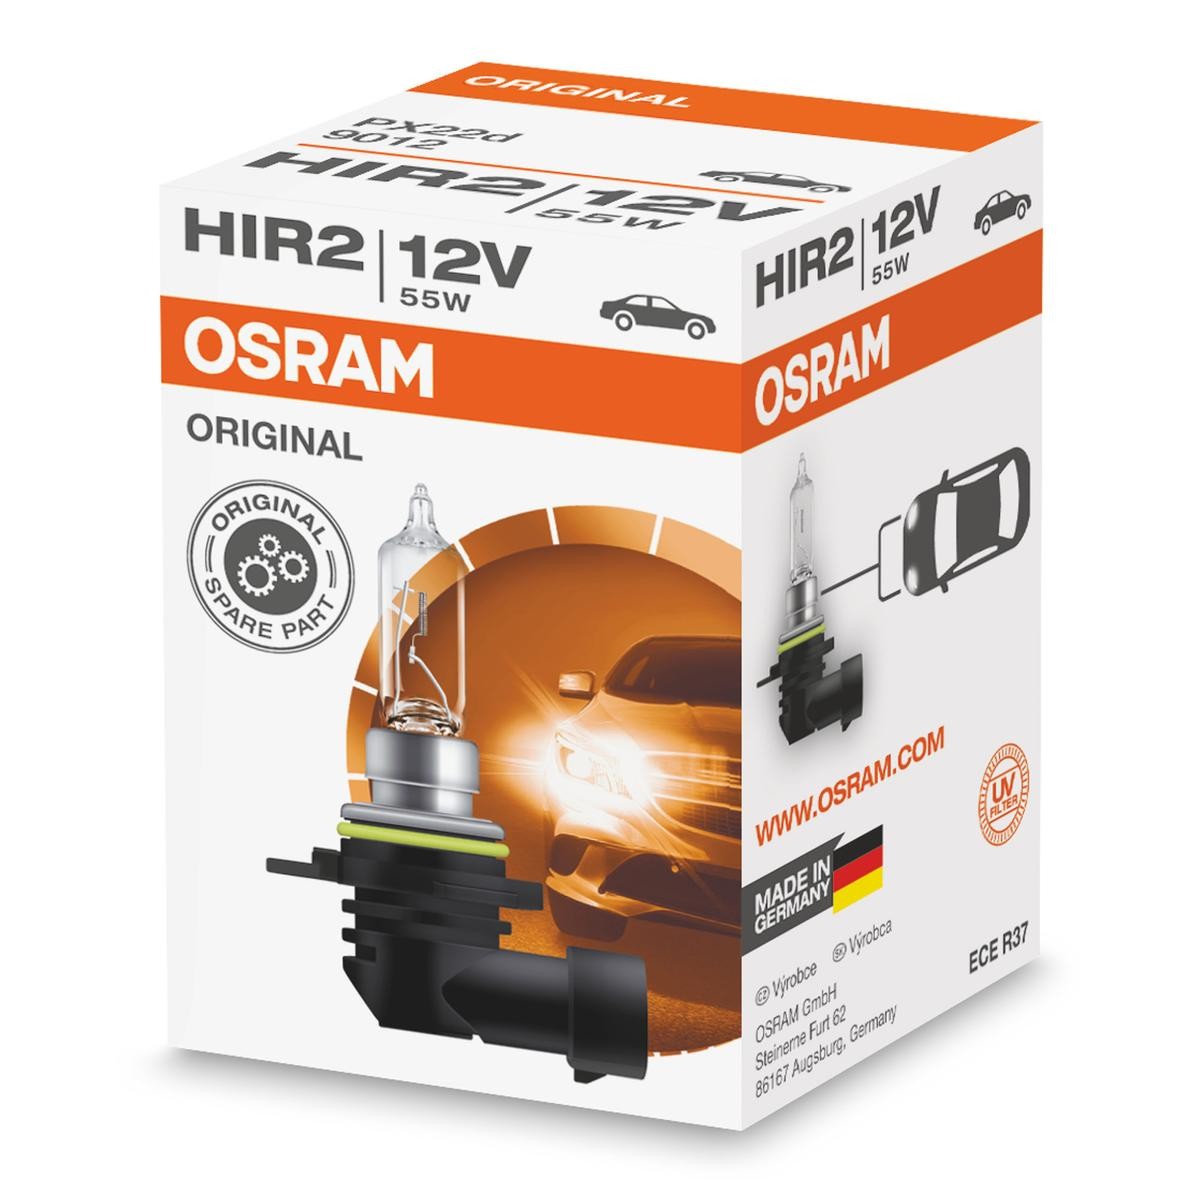 OSRAM 9012 Halvljuslampa HIR2 12V 55W PX22d 3200K Halogen ORIGINAL